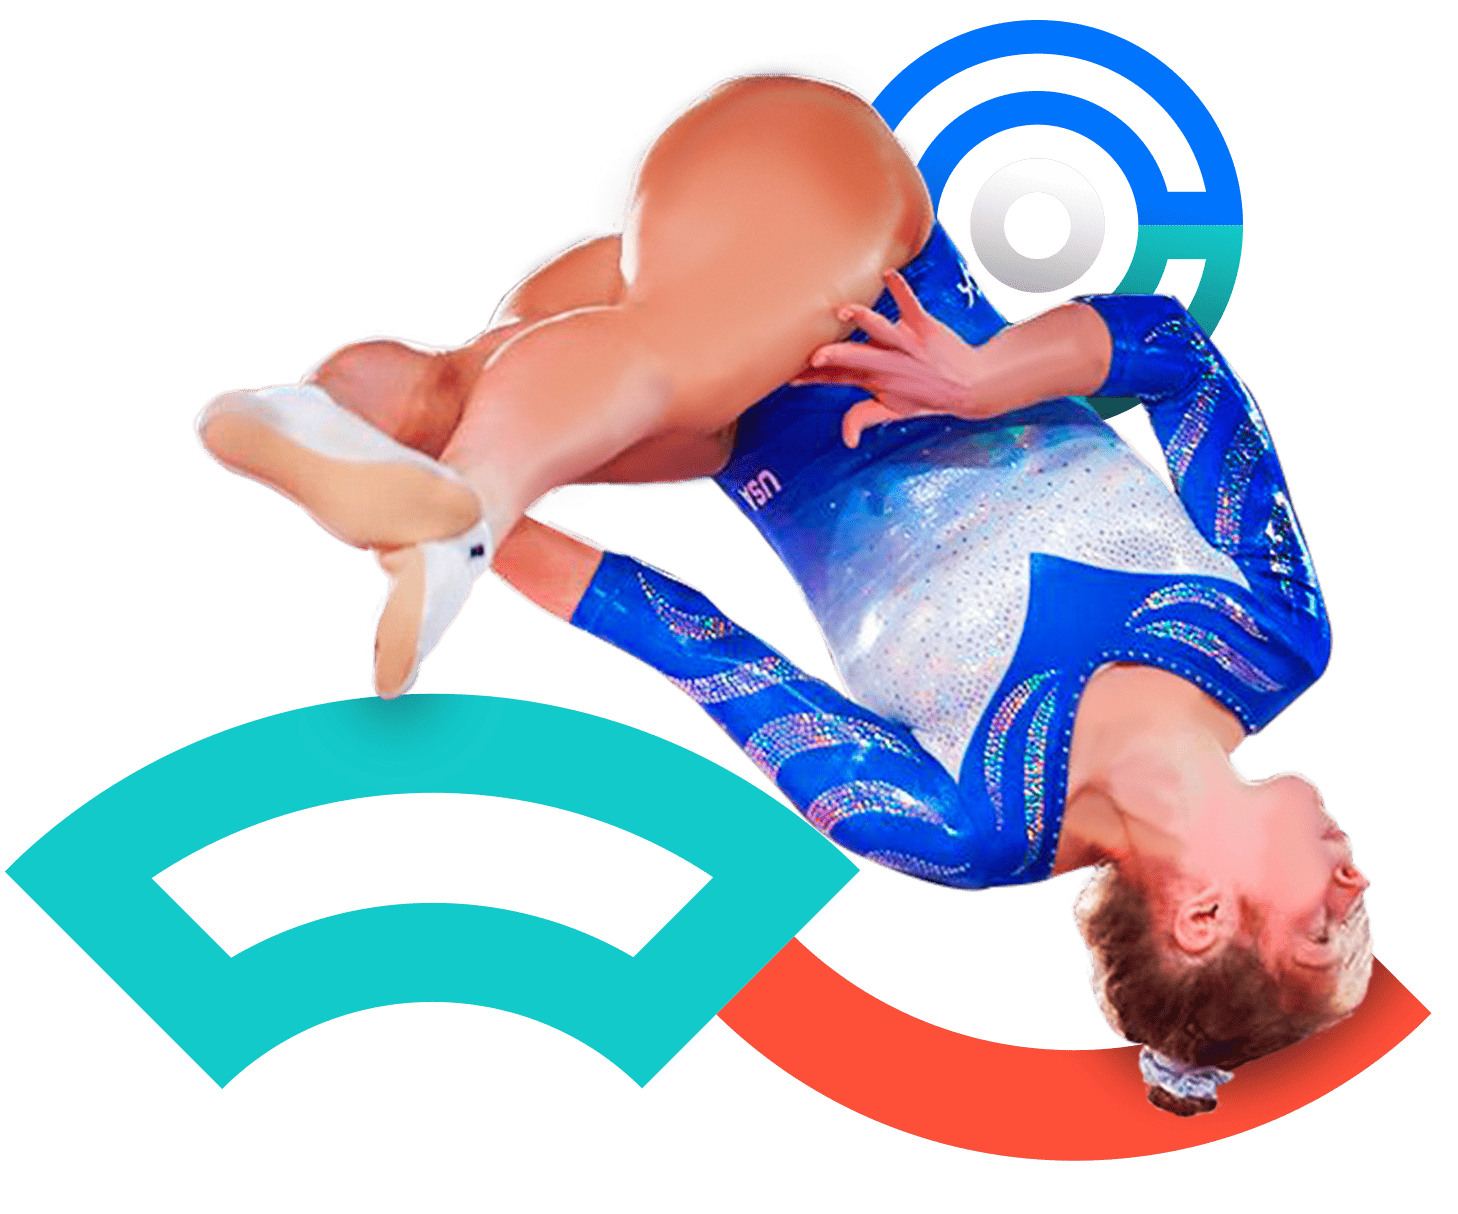 En la foto, una gimnasta ejecuta su rutina con un salto y su cuerpo se voltea. Viste un uniforme azul. 